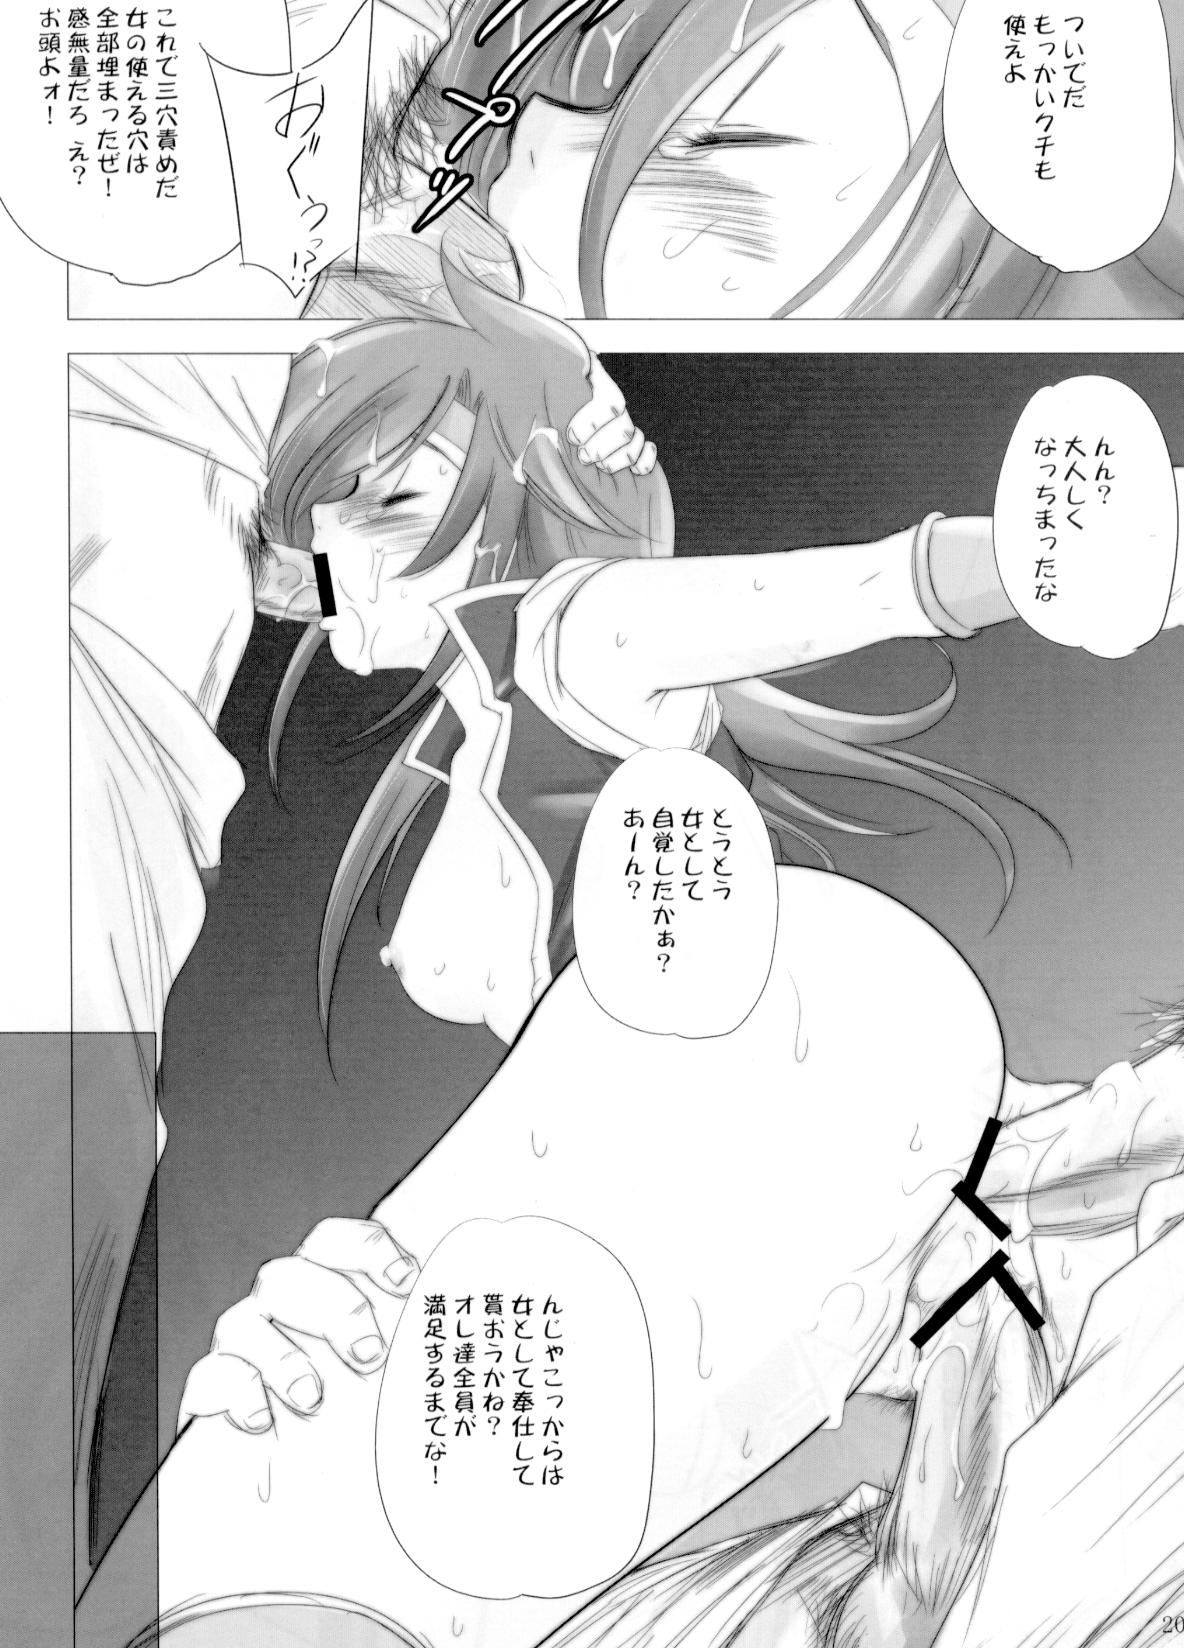 [Ikebukuro DPC] White Impure Desire vol.11 (Final Fantasy) page 19 full